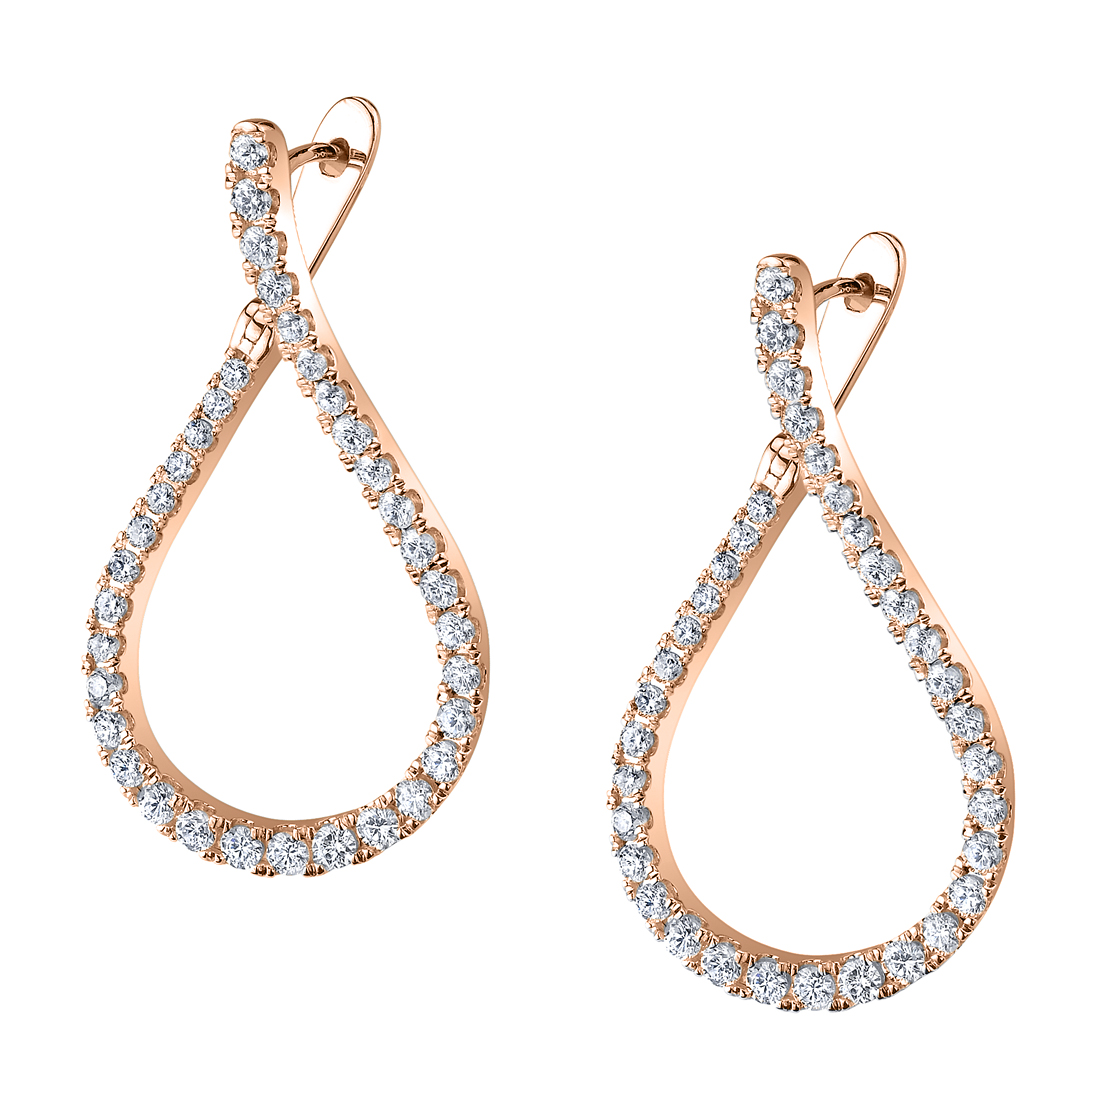 Unique Diamond Hoop Earrings in Rose Gold